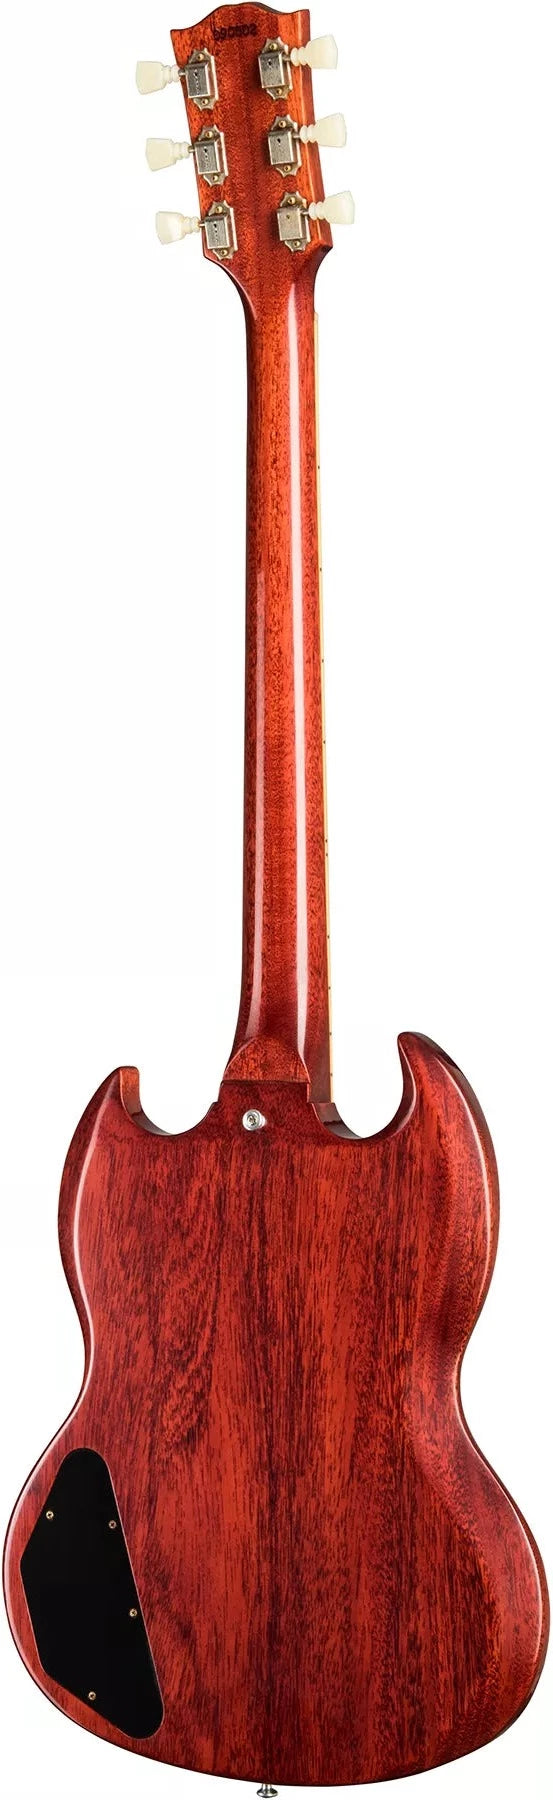 Gibson 1964 SG Standard Reissue w/ Maestro Vibrola VOS Electric Guitar, Cherry Red (SGSR64VOCHNM1)